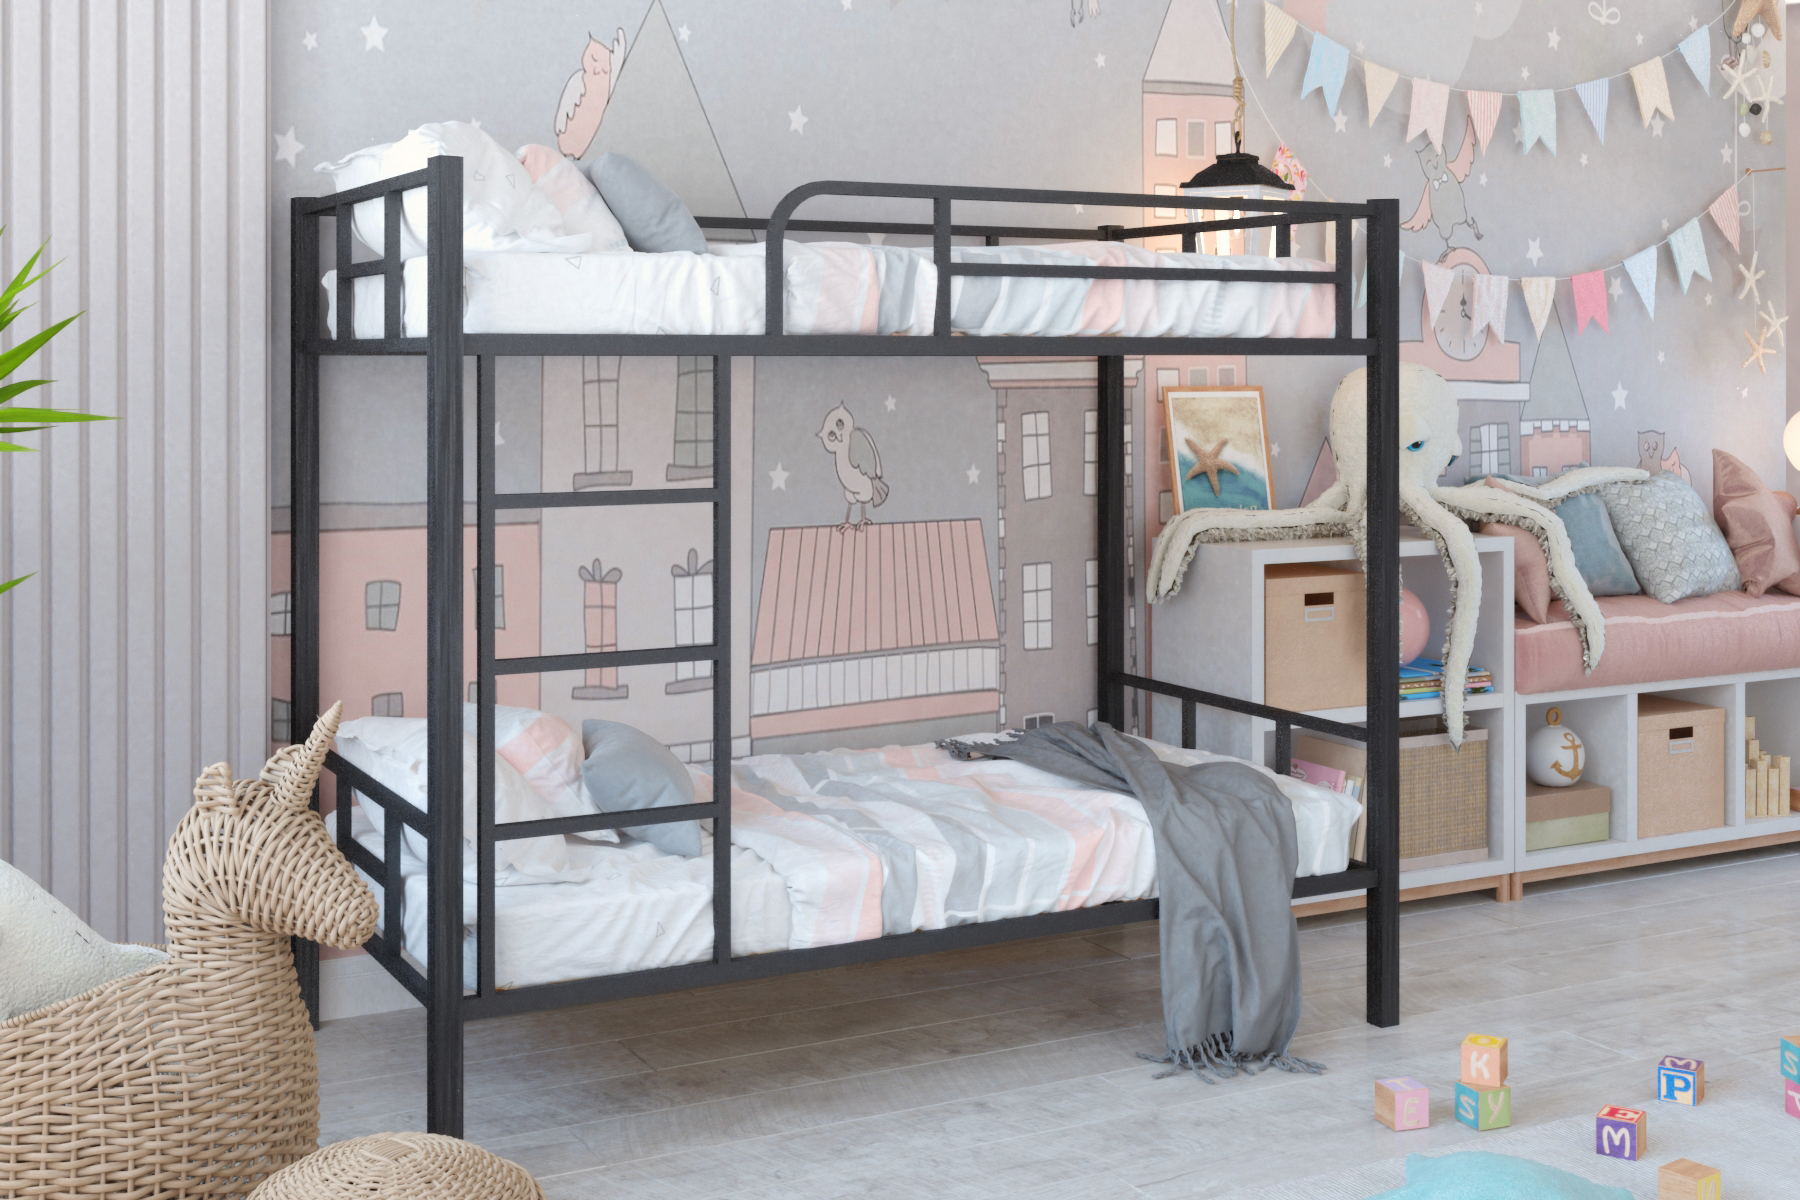 Кровать детская подростковая Урбан Мебель Двухъярусная спальное место 160х80 в черный